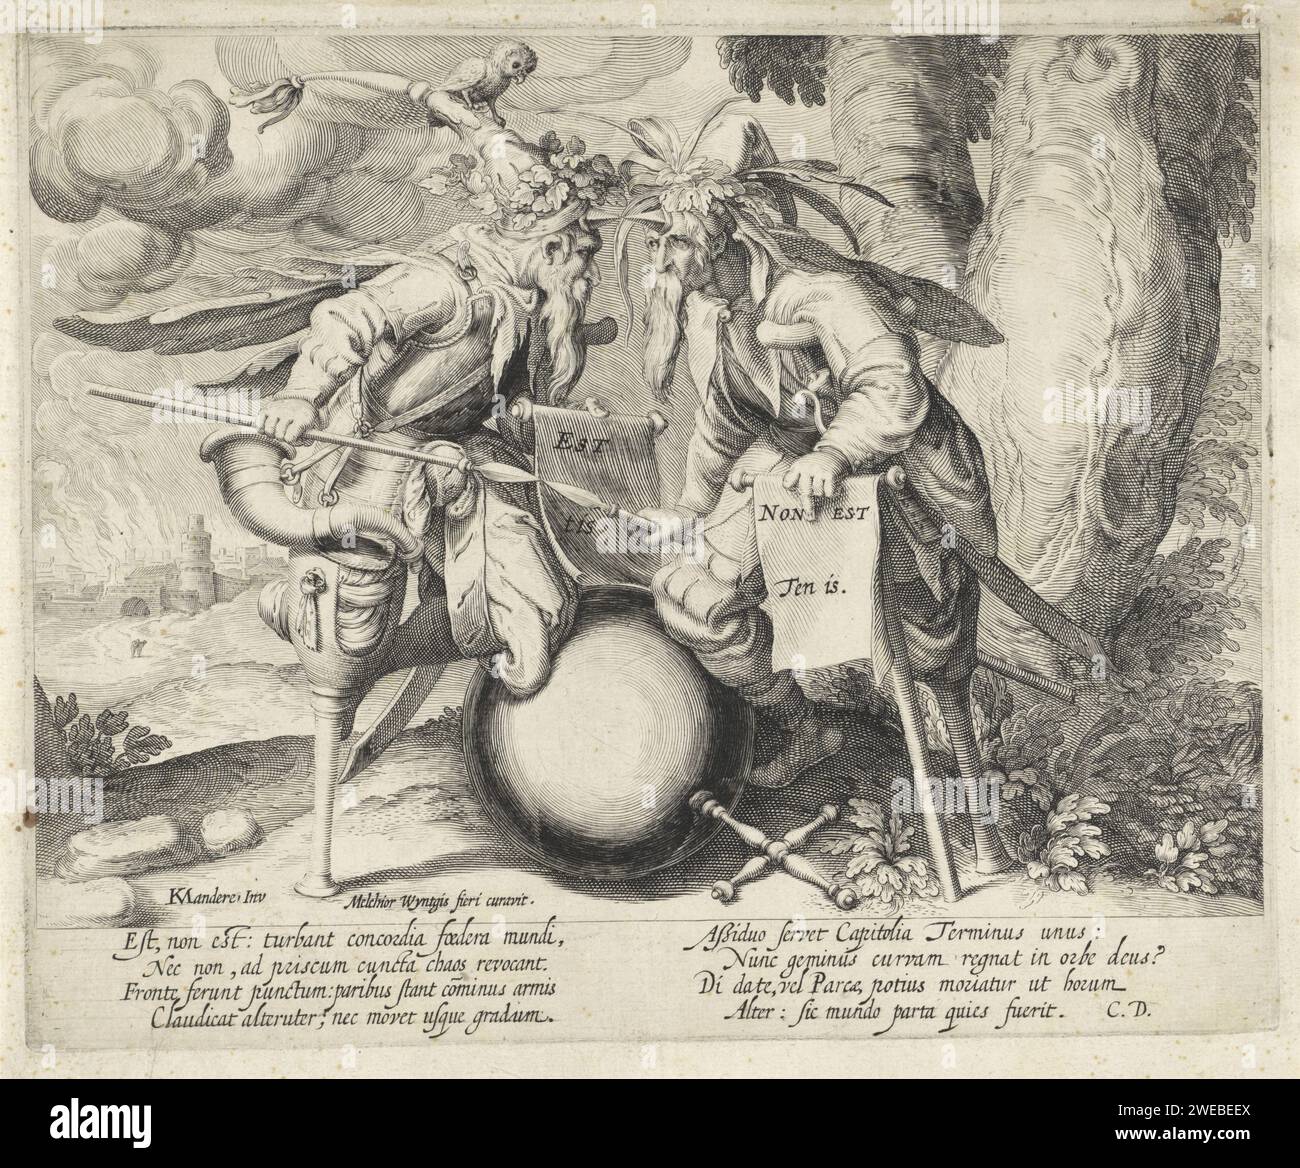 Unheil in der Welt, Jacques de Gheyn (II) (zugeschrieben), nach Karel van Mander (I), 1558–1626 drucken zwei mit stechenden Waffen bewaffnete Knistern stehen einander gegenüber. Mit ihren Beinen stützen sie sich auf ein kugelförmiges Objekt mit einem Kreuz, möglicherweise den Regierungsapfel als Symbol der Welt. Beide tragen spitze Kopfbedeckungen mit Blättern. Da ist eine Eule auf der Kopfabdeckung des linken Mannes. Die bärtigen Männer halten ein Schreibbuch. Auf der linken Seite befindet sich eine brennende Stadt. Unten eine achtzeilige moralistische Unterschrift in lateinischer Sprache. Druckerei: Nord-Niederlande Design von: Low CountriesPublisher: Lo Stockfoto